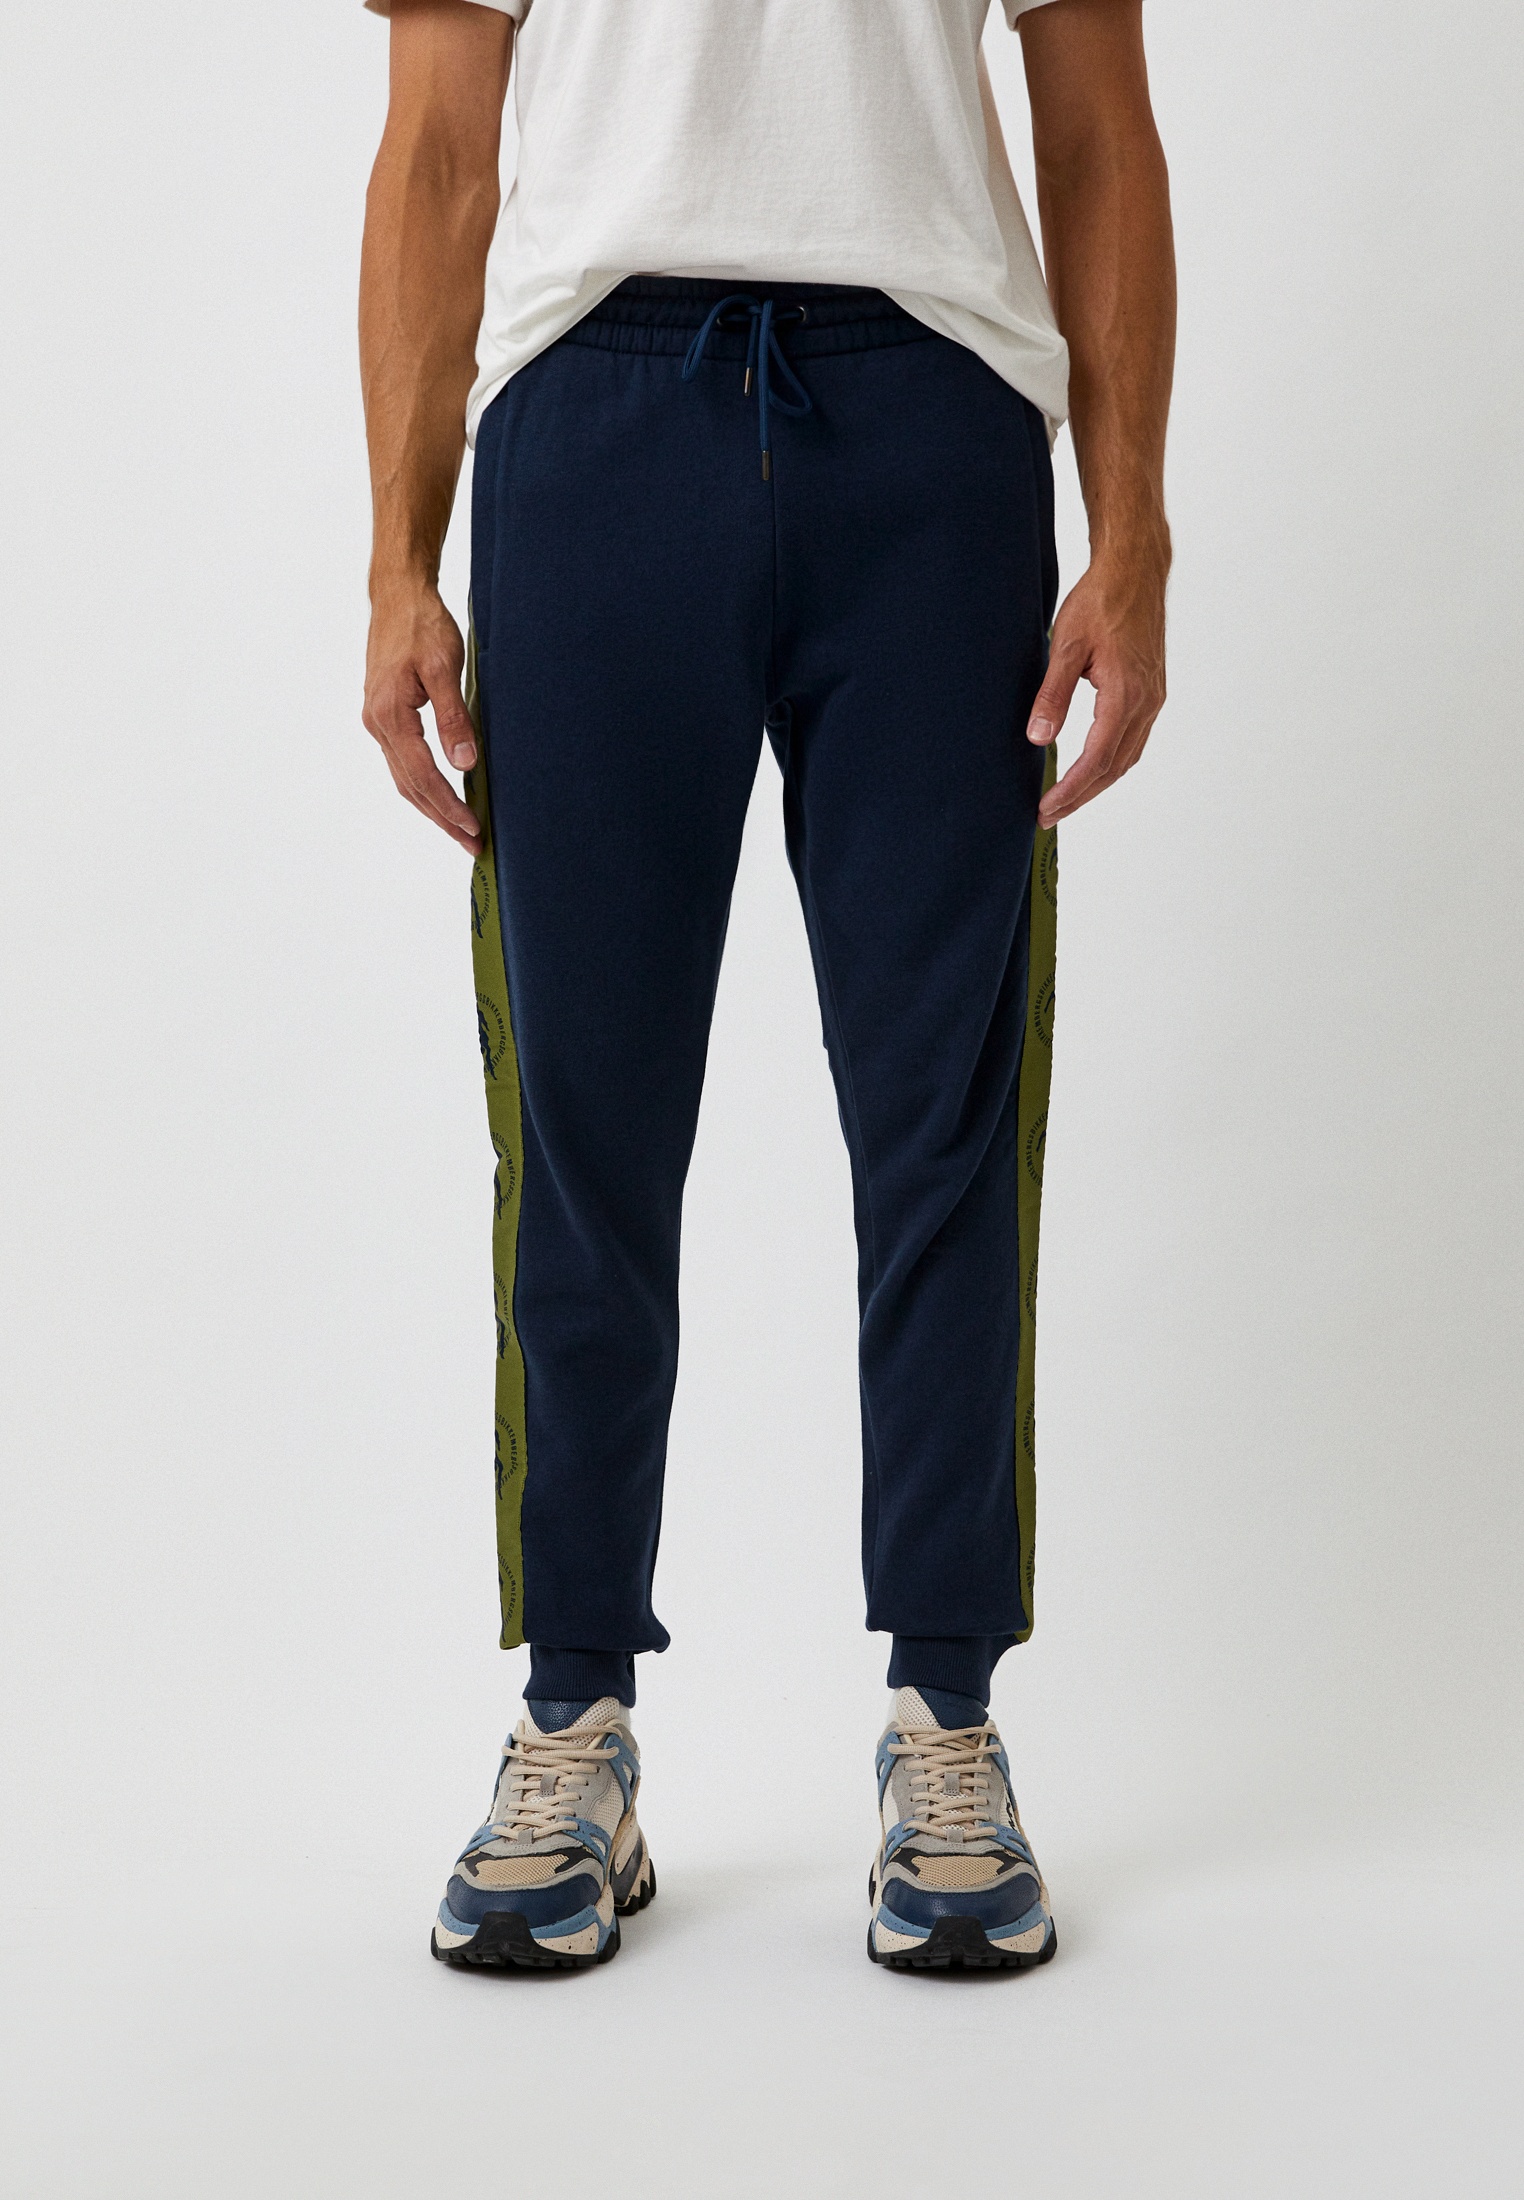 Мужские спортивные брюки Bikkembergs (Биккембергс) C 1 226 80 M 4326: изображение 5